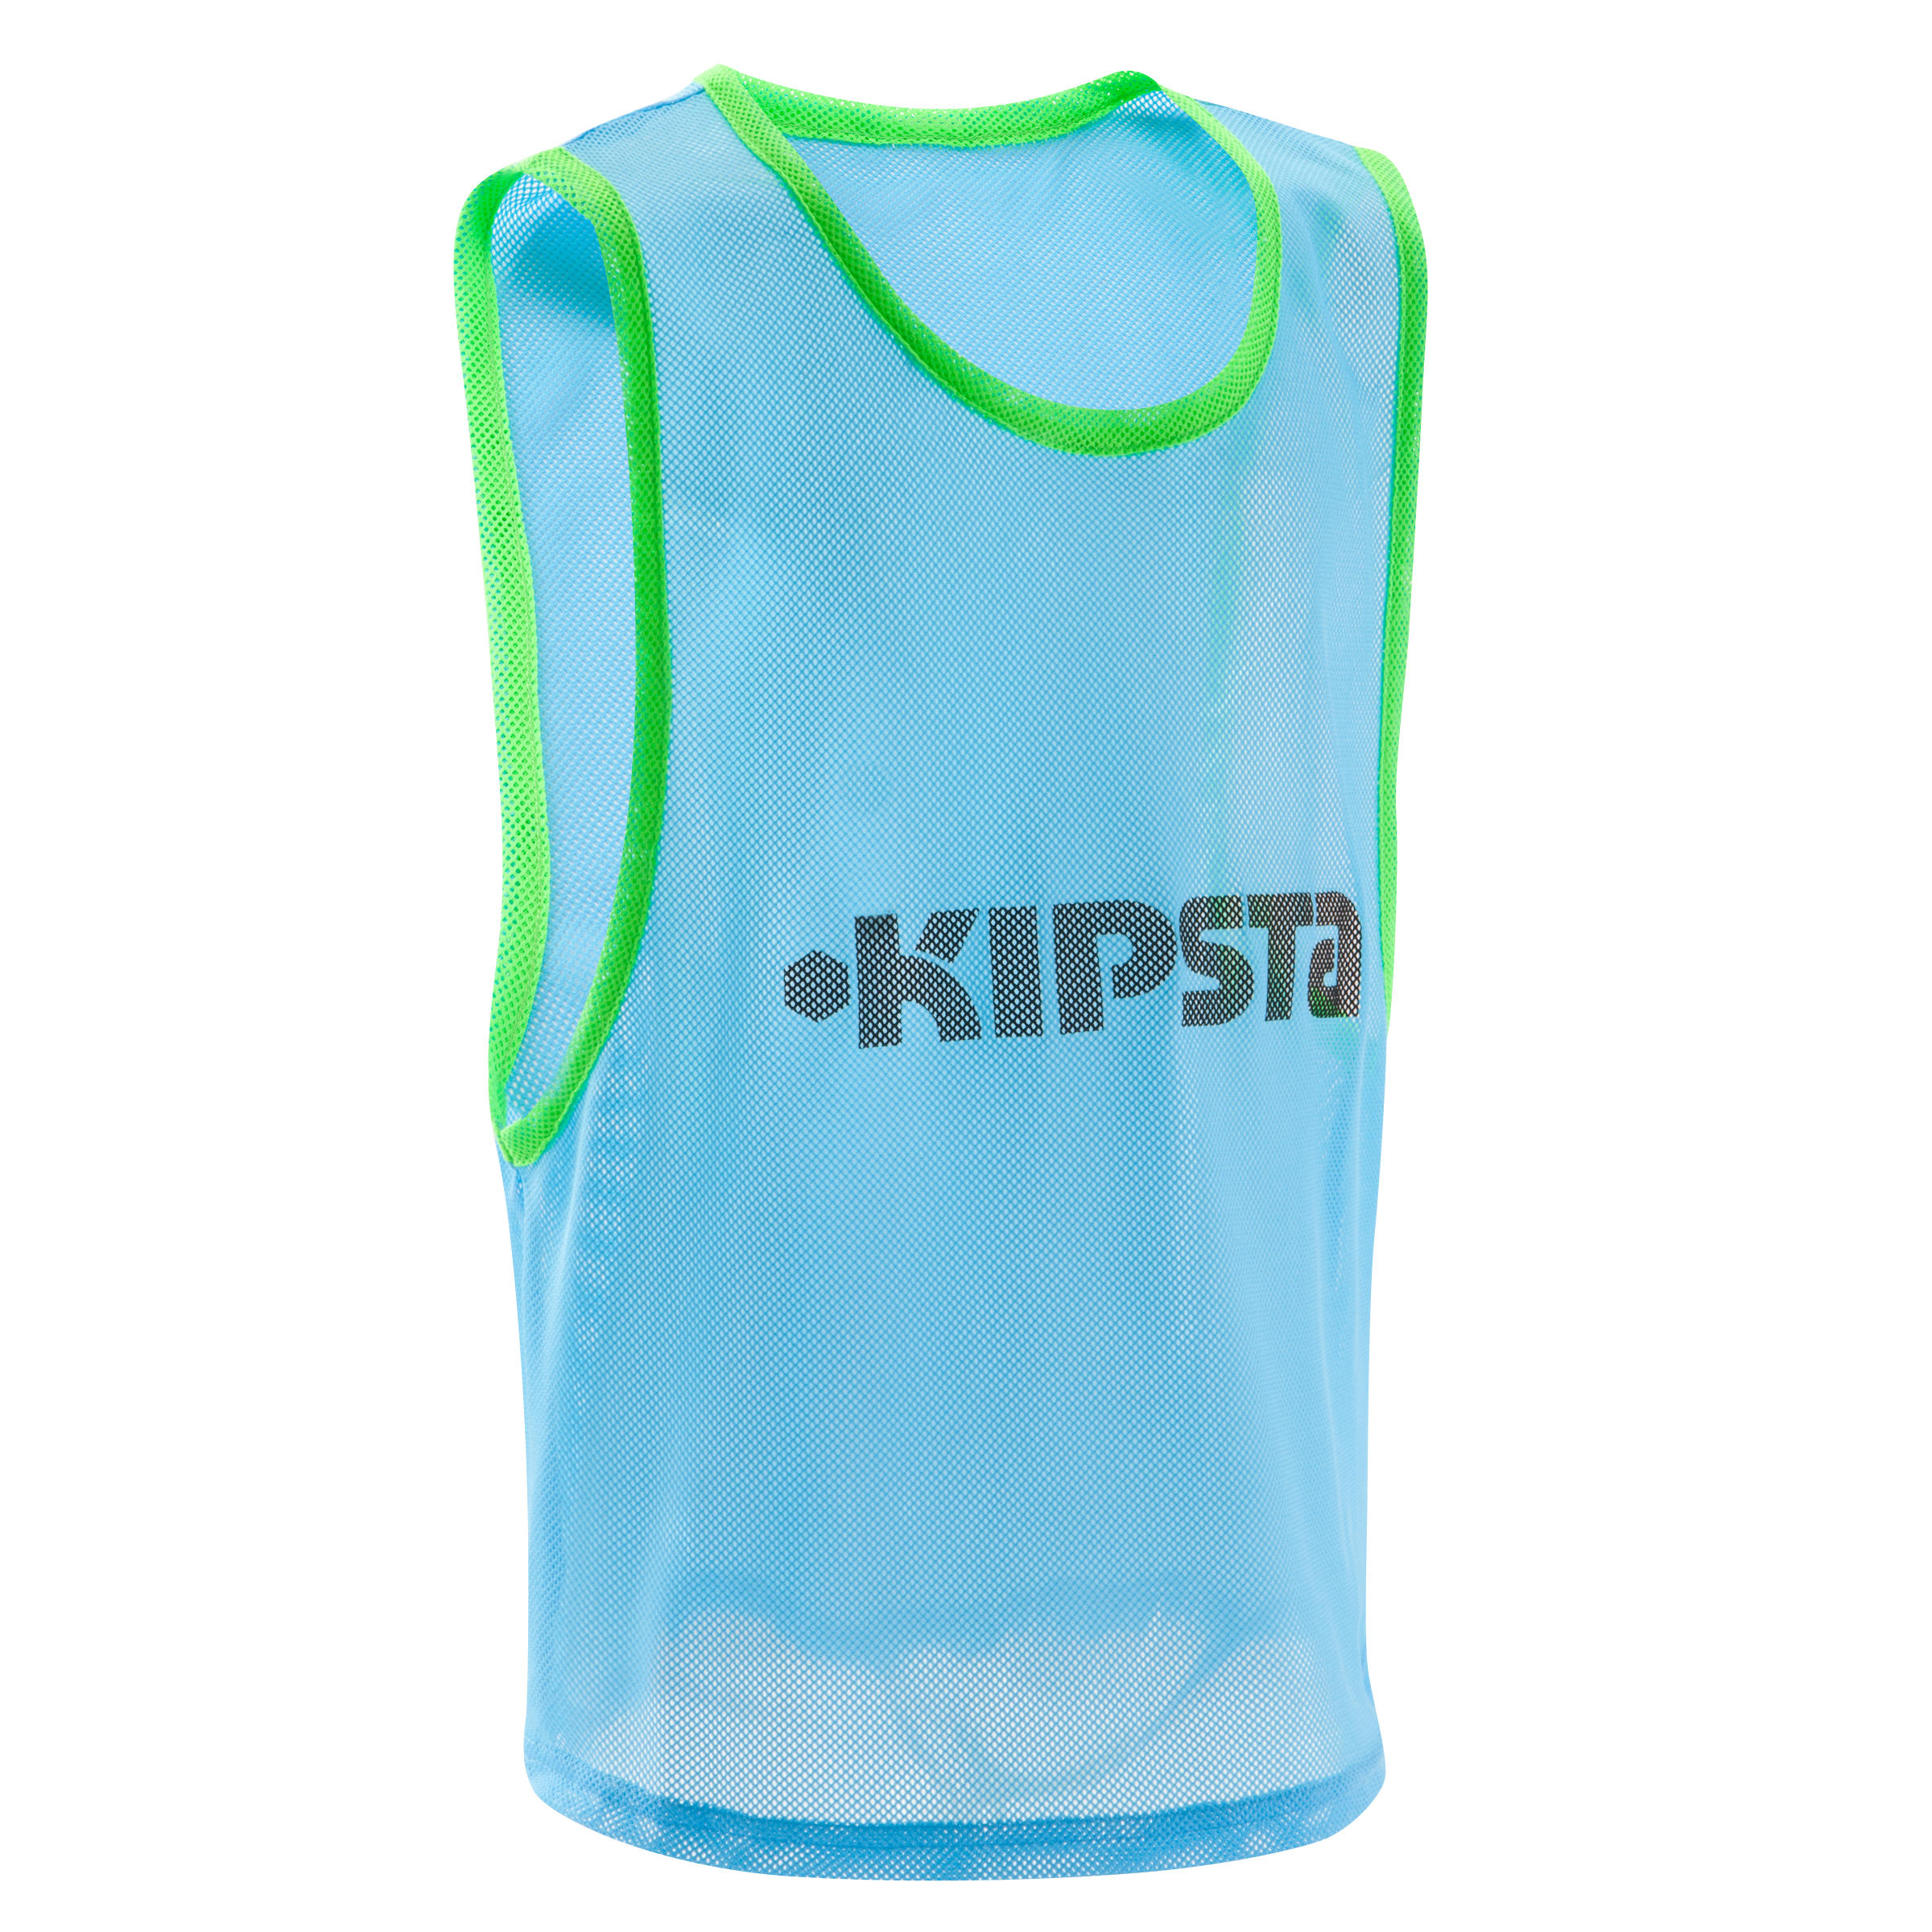 KIPSTA Kids Team Sports Bib - Blue